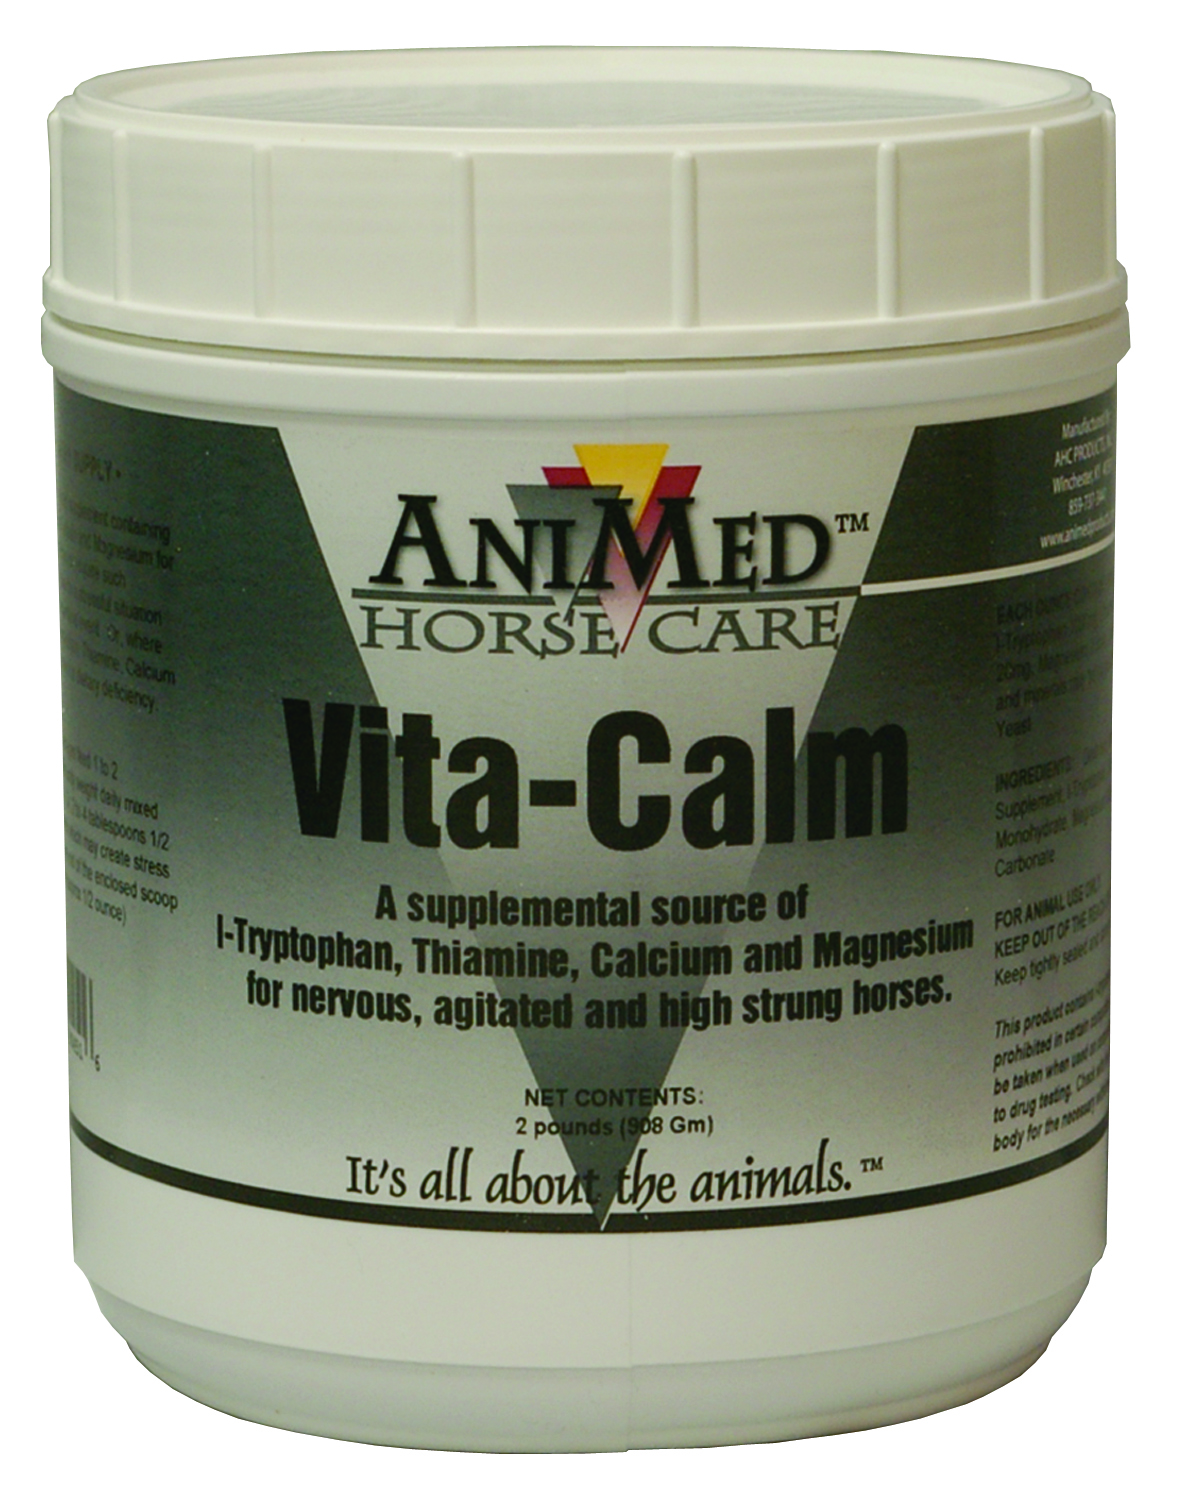 Vita-calm For Horses